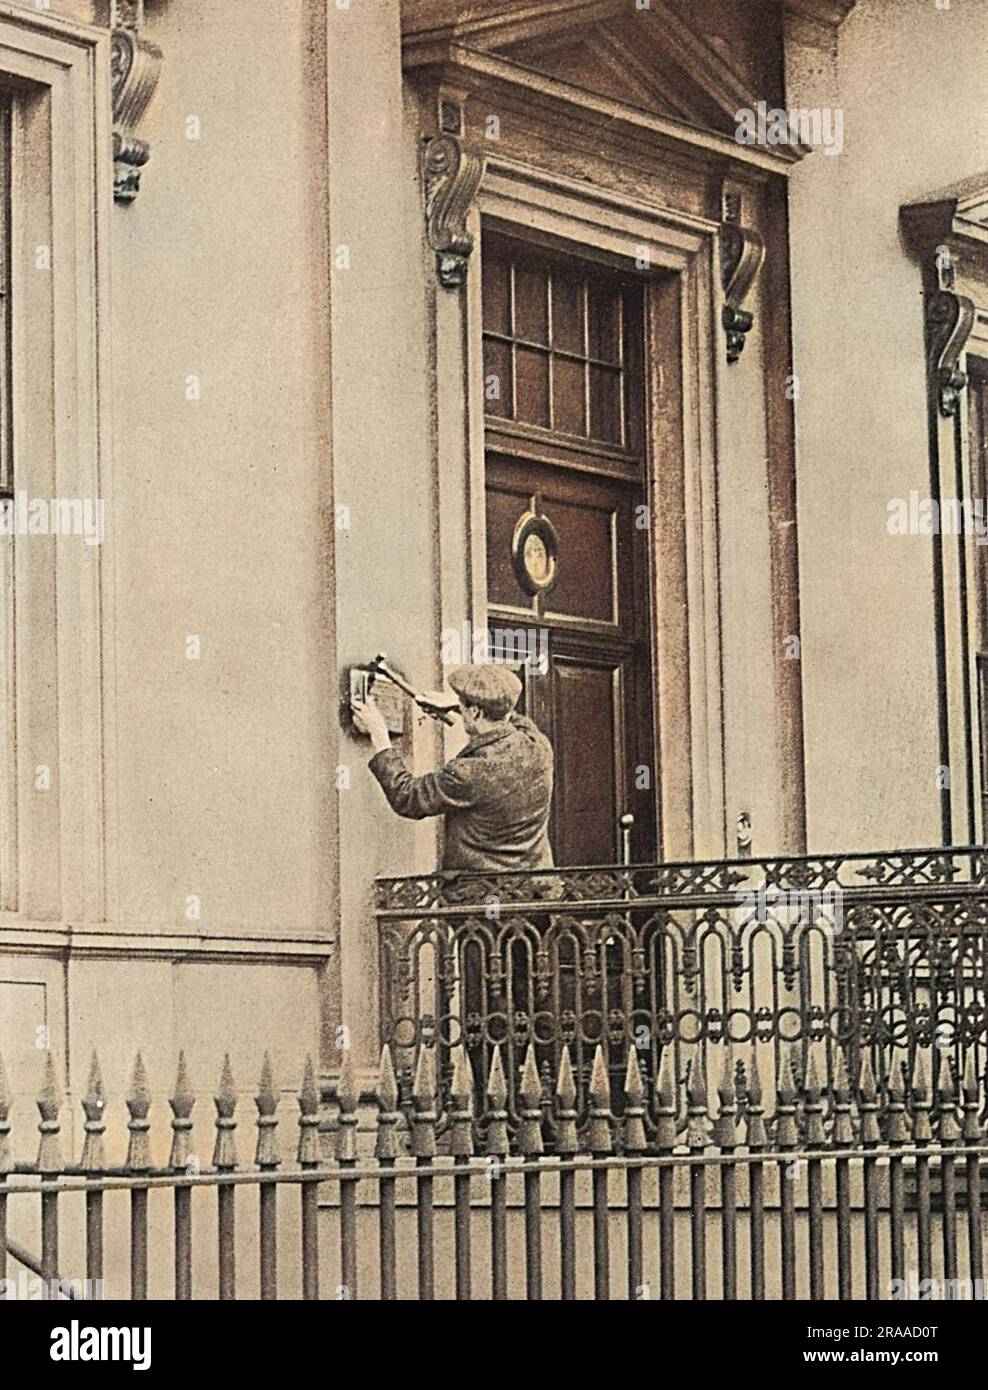 Ein Zeichen für den Zusammenbruch der diplomatischen Beziehungen bei Ausbruch des Ersten Weltkriegs war die Entfernung der Messingplatte in der deutschen Botschaft in London. Datum: 1914 Stockfoto